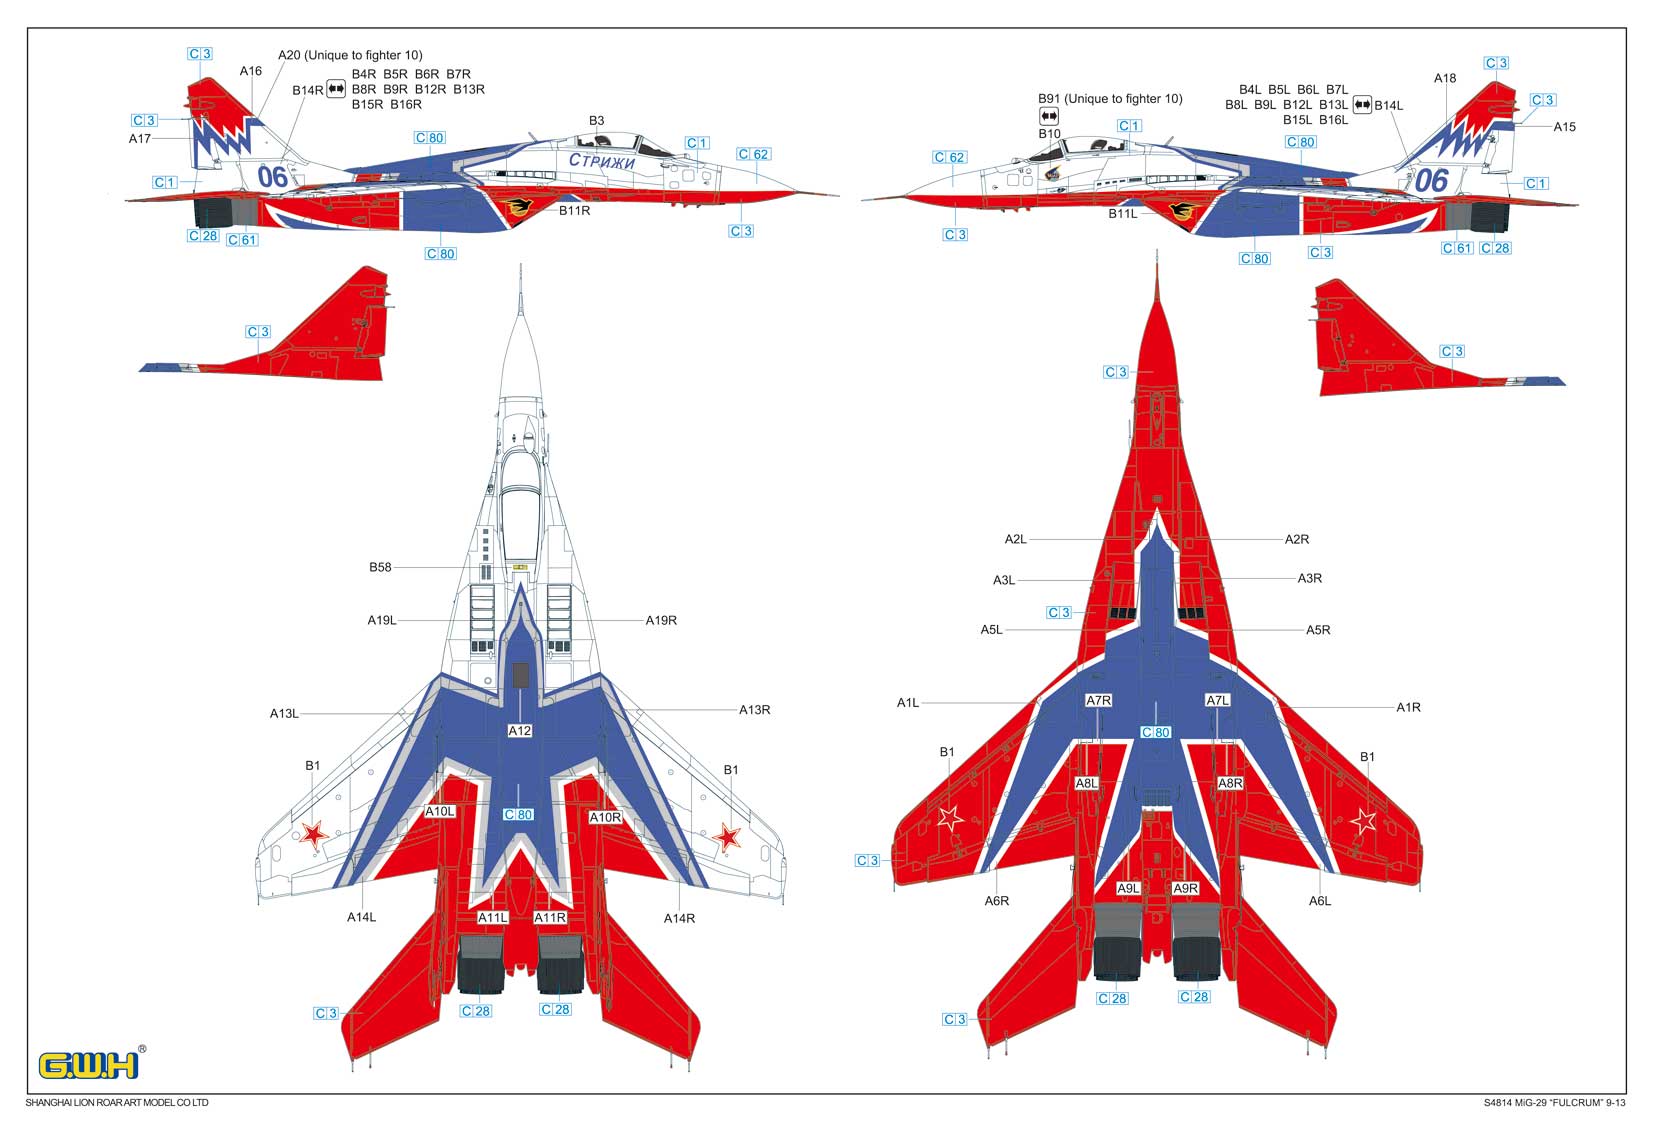 1/48 MiG-29 SWIFTS - ウインドウを閉じる